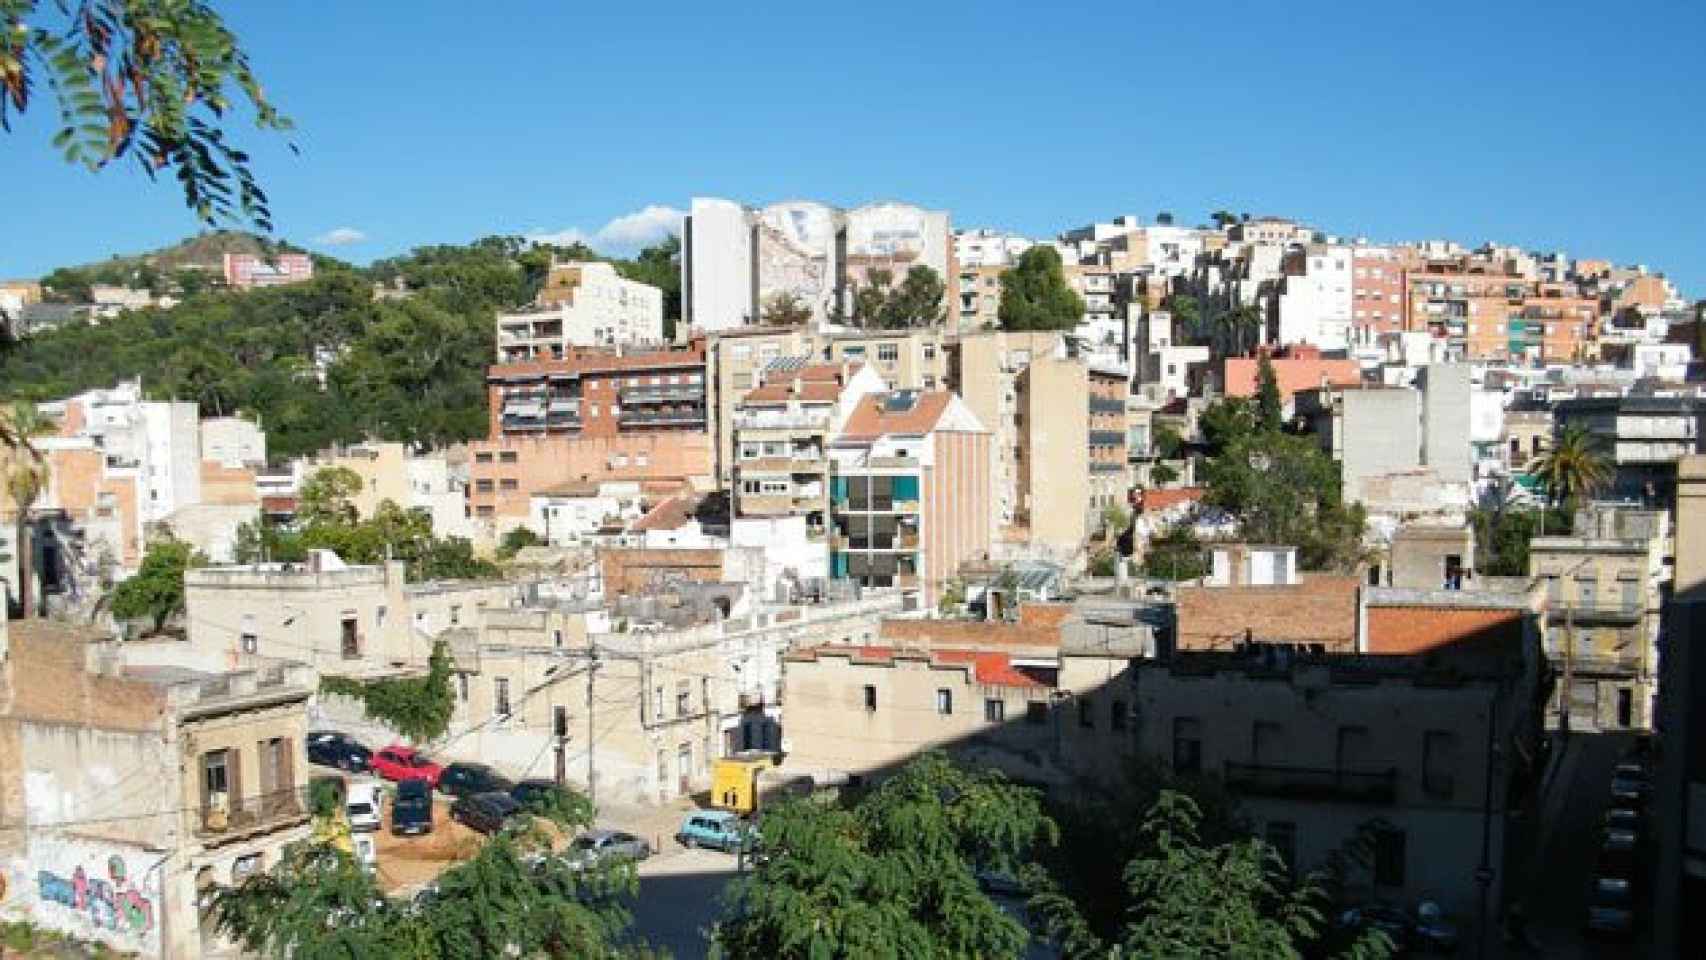 Vista del barrio de El Coll de Barcelona / CG